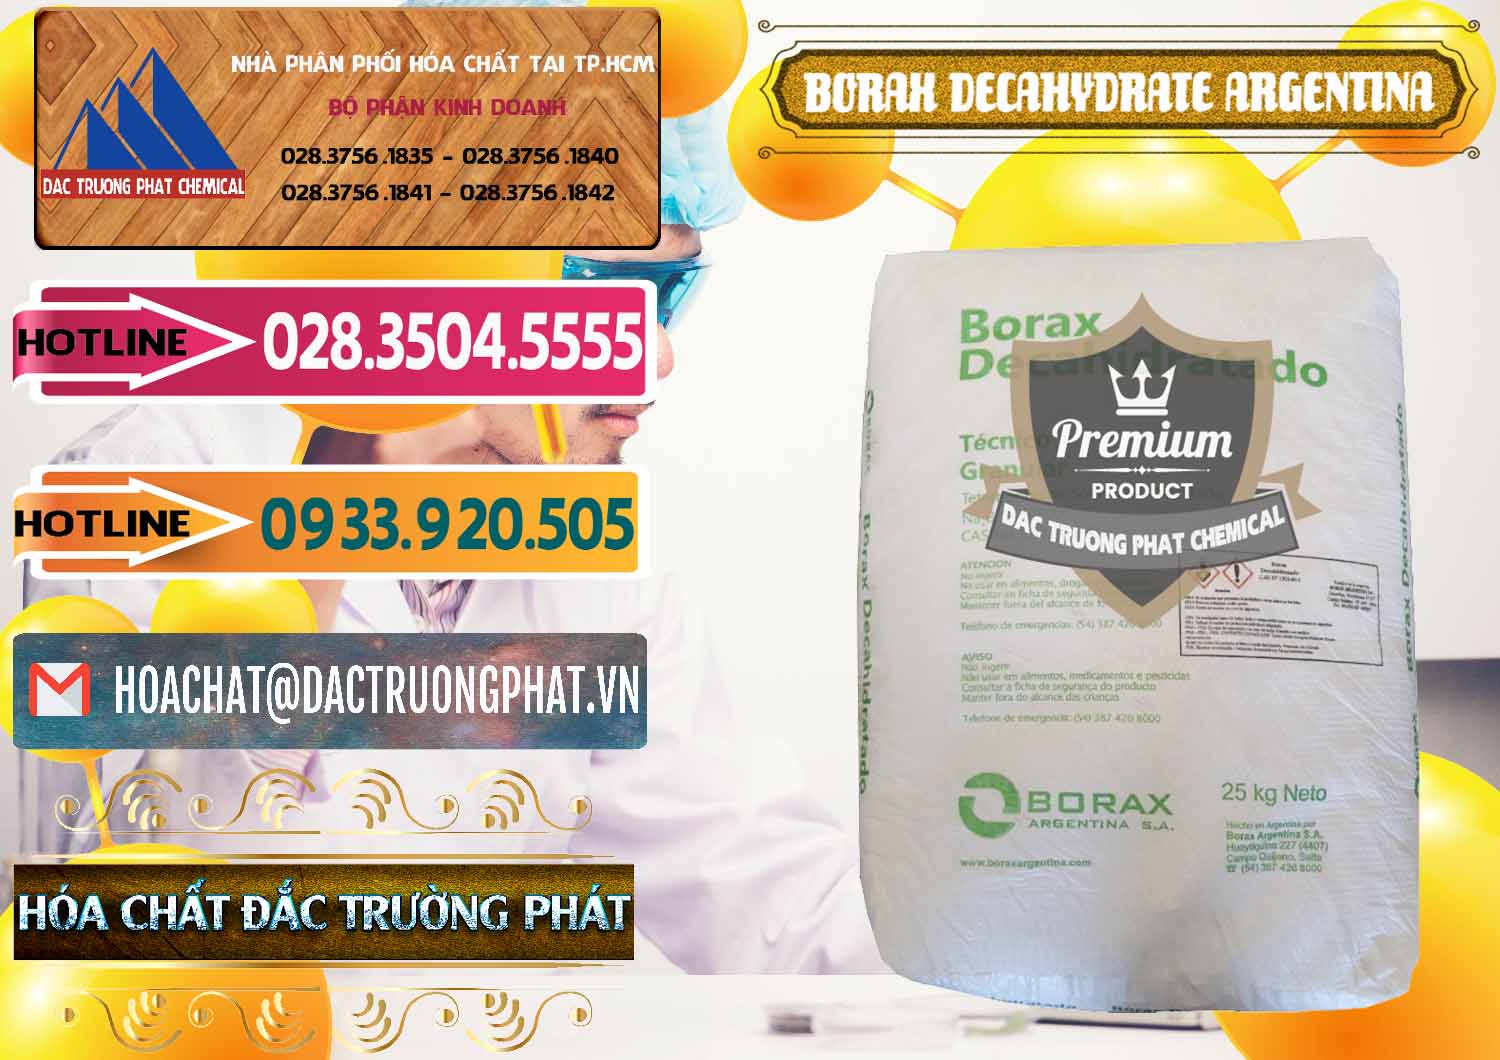 Công ty chuyên bán ( phân phối ) Borax Decahydrate Argentina - 0446 - Cty chuyên bán & cung cấp hóa chất tại TP.HCM - dactruongphat.vn